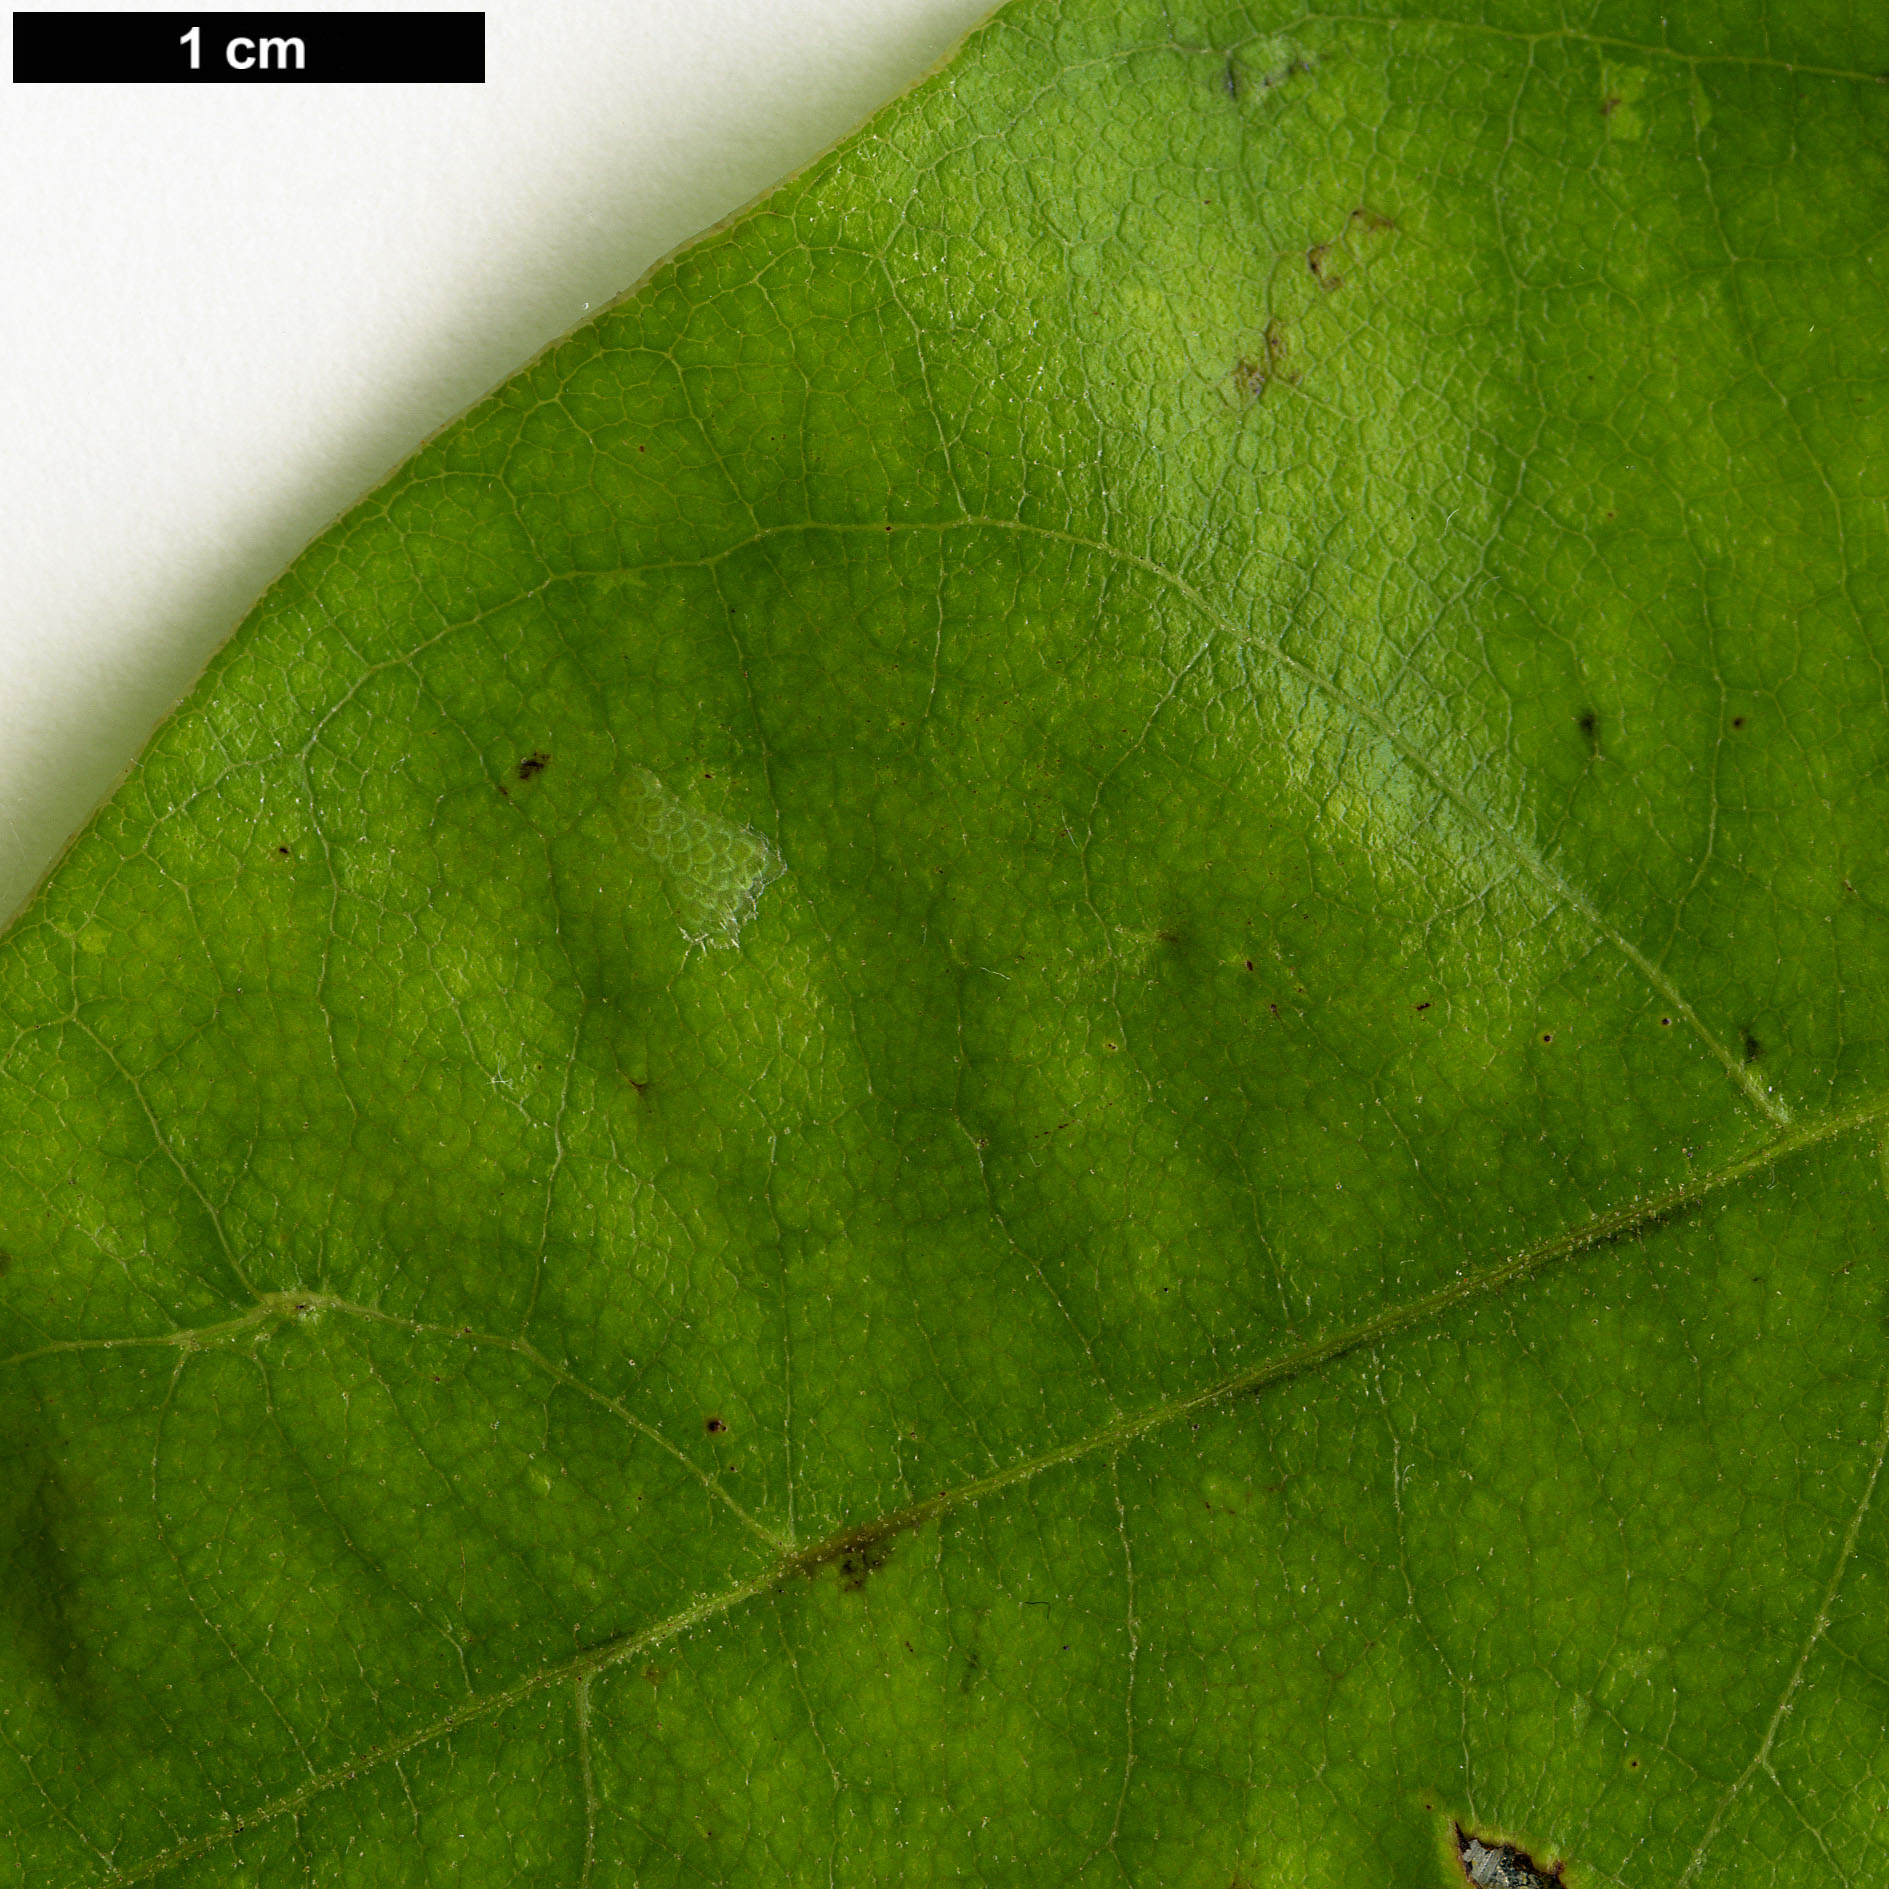 High resolution image: Family: Juglandaceae - Genus: Engelhardia - Taxon: roxburghiana